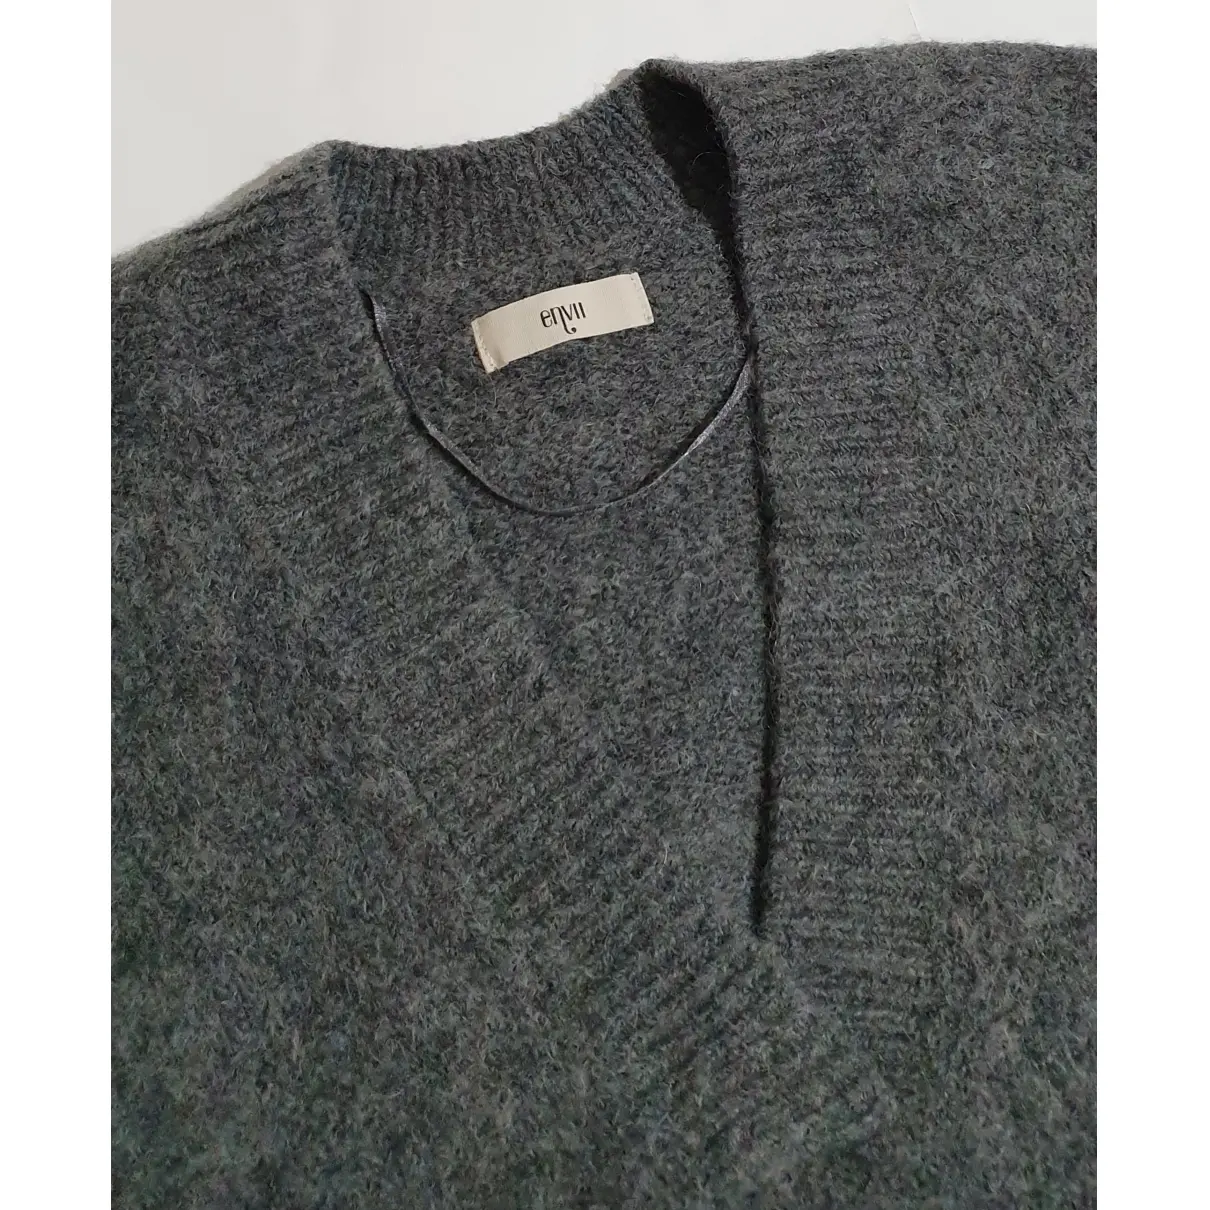 Buy Envii Wool jumper online